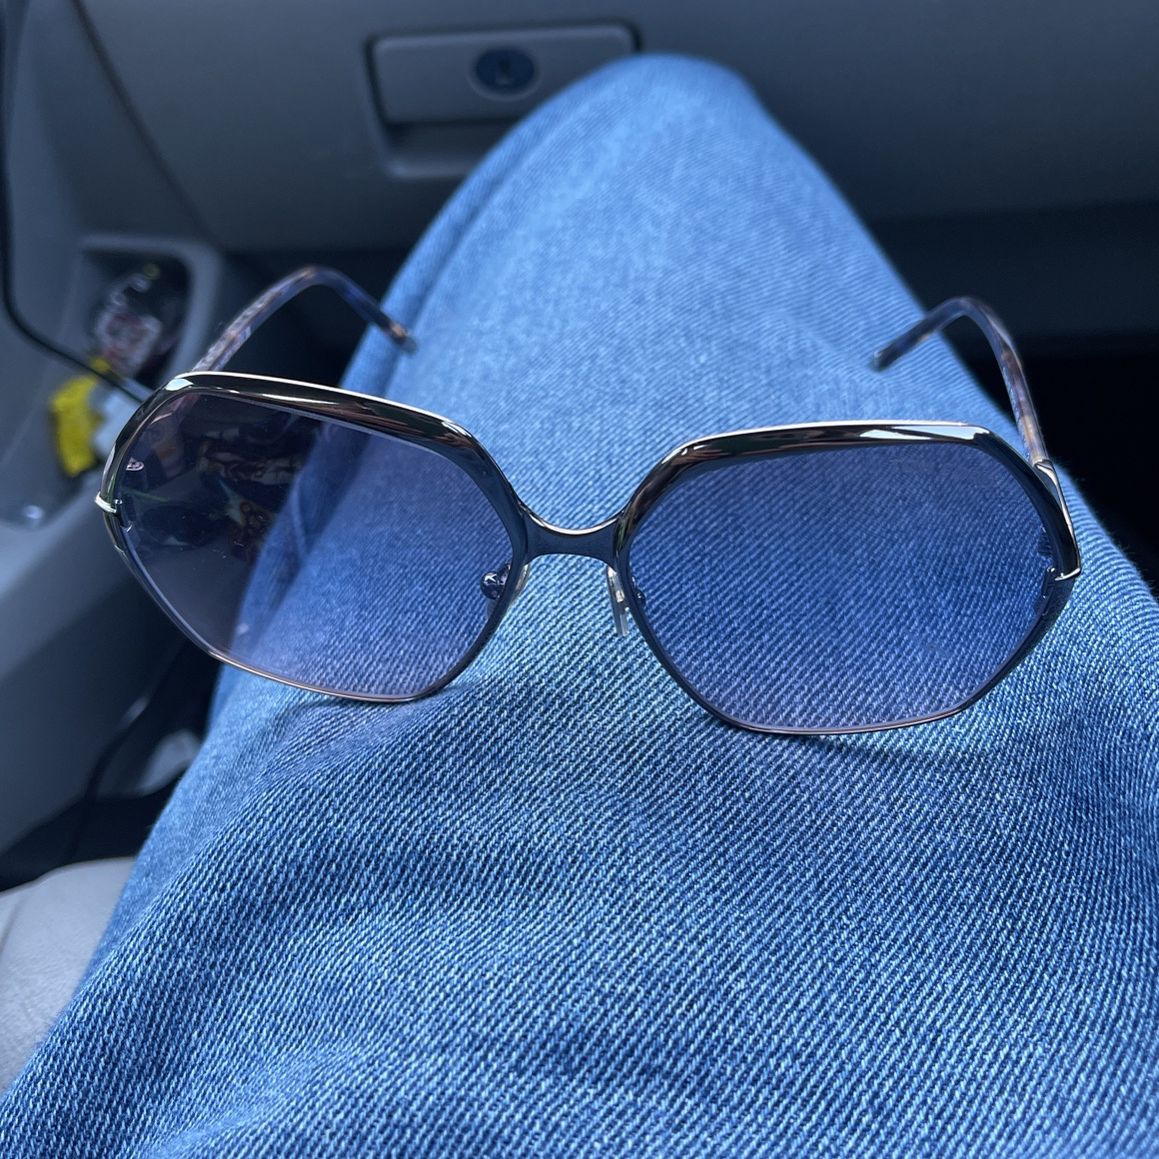 chanel 5210q sunglasses